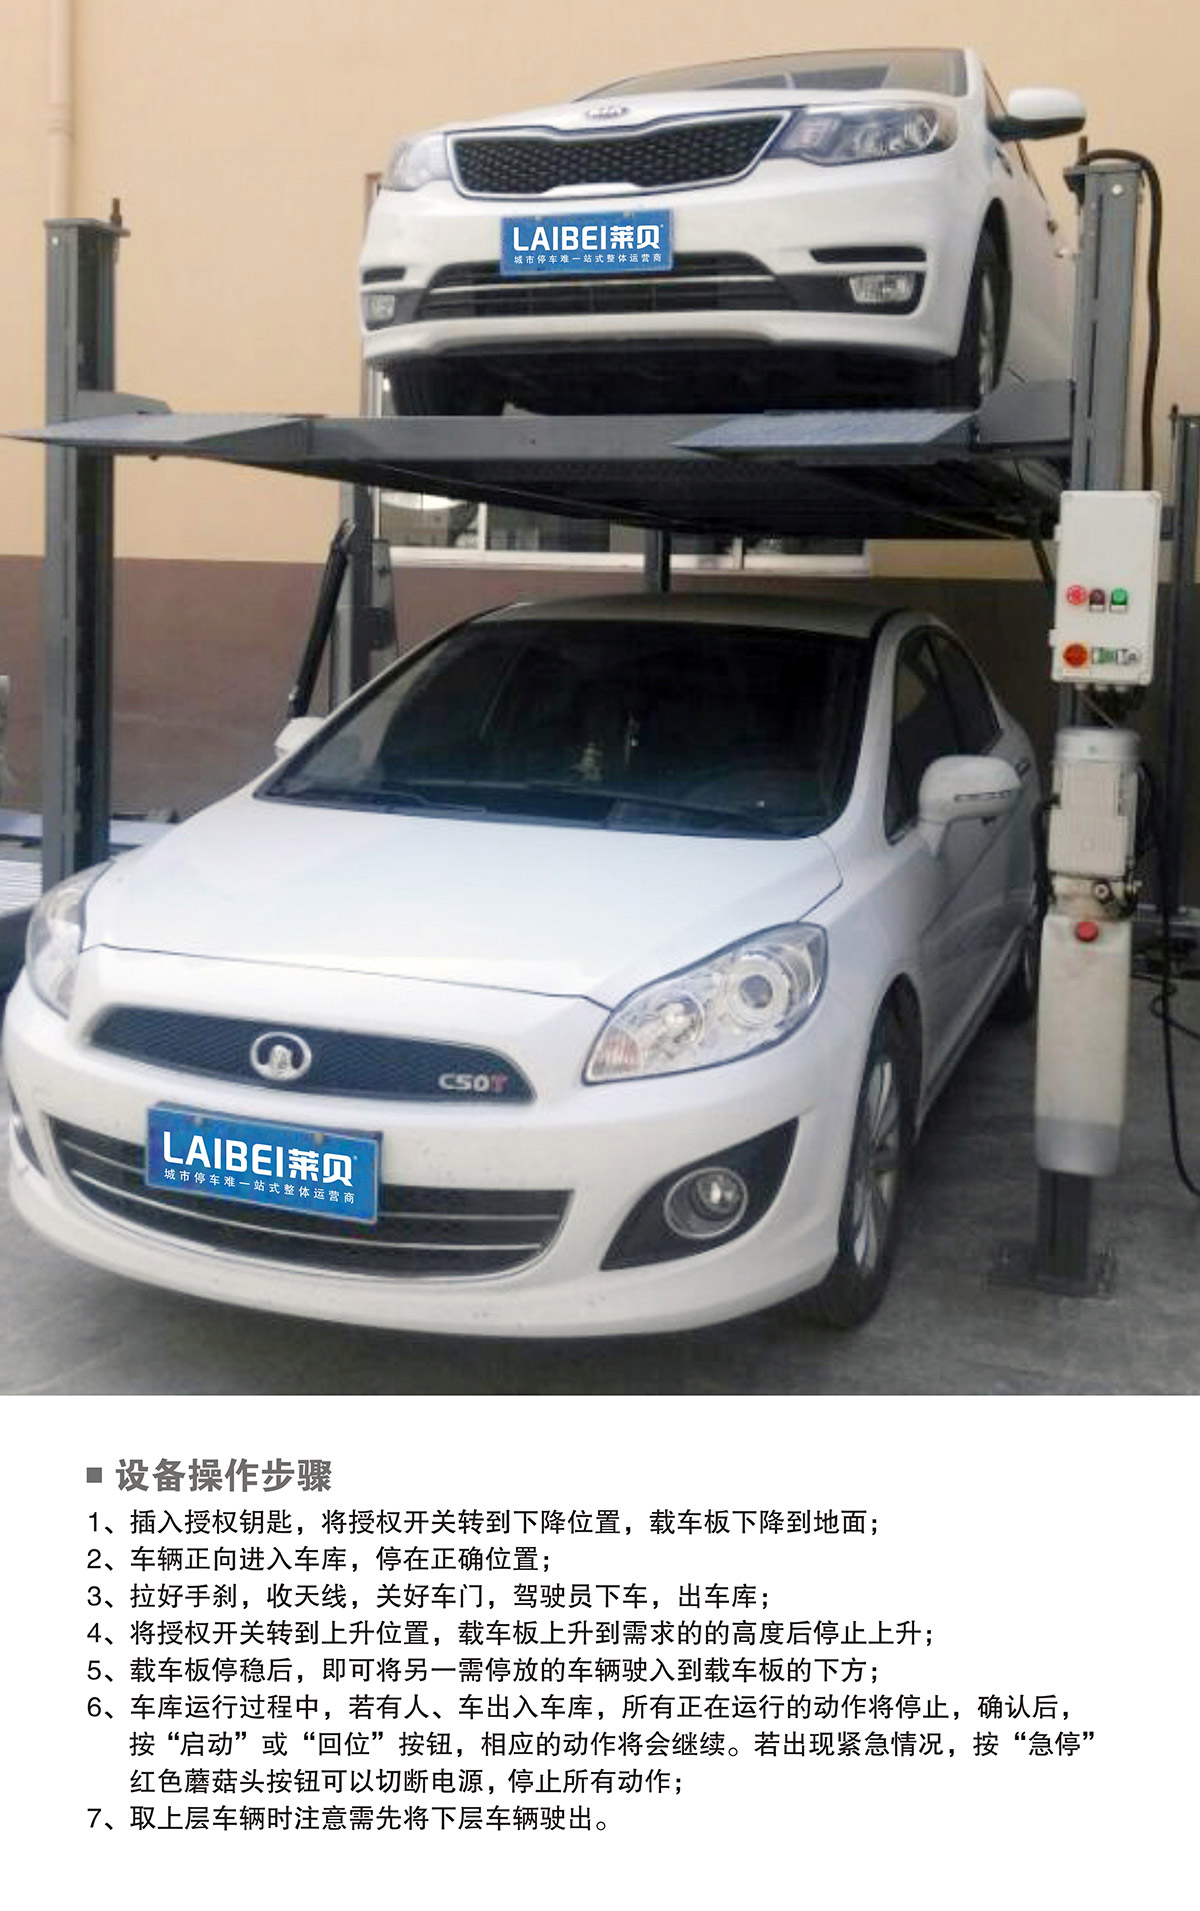 重庆PJS四柱简易升降立体停车设备操作步骤.jpg